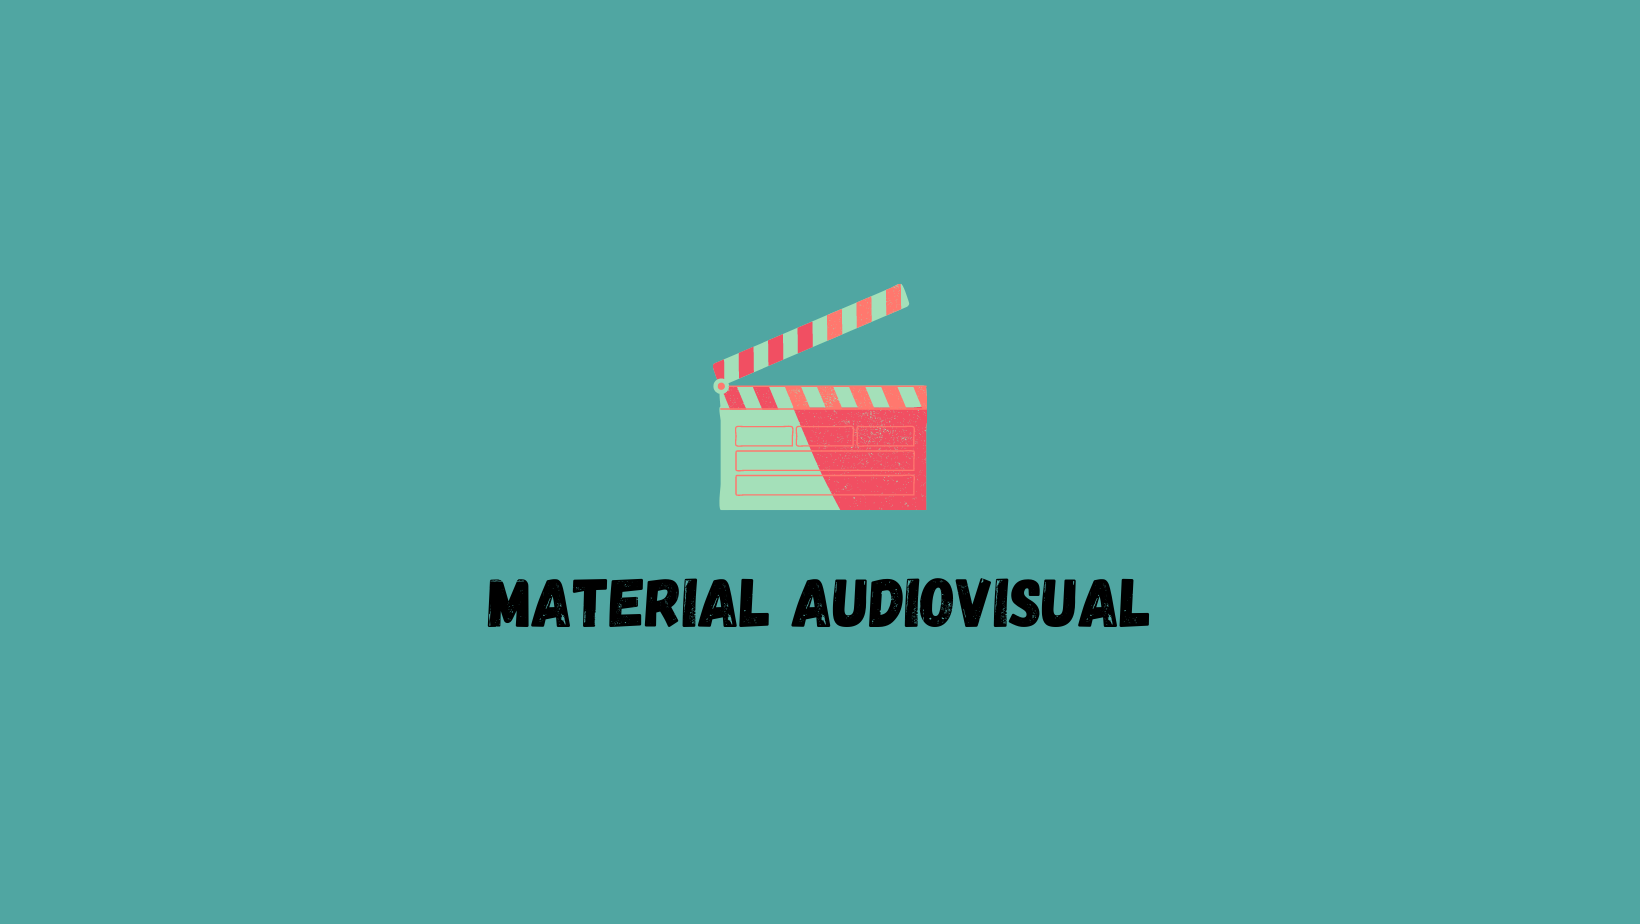 Material audiovisual